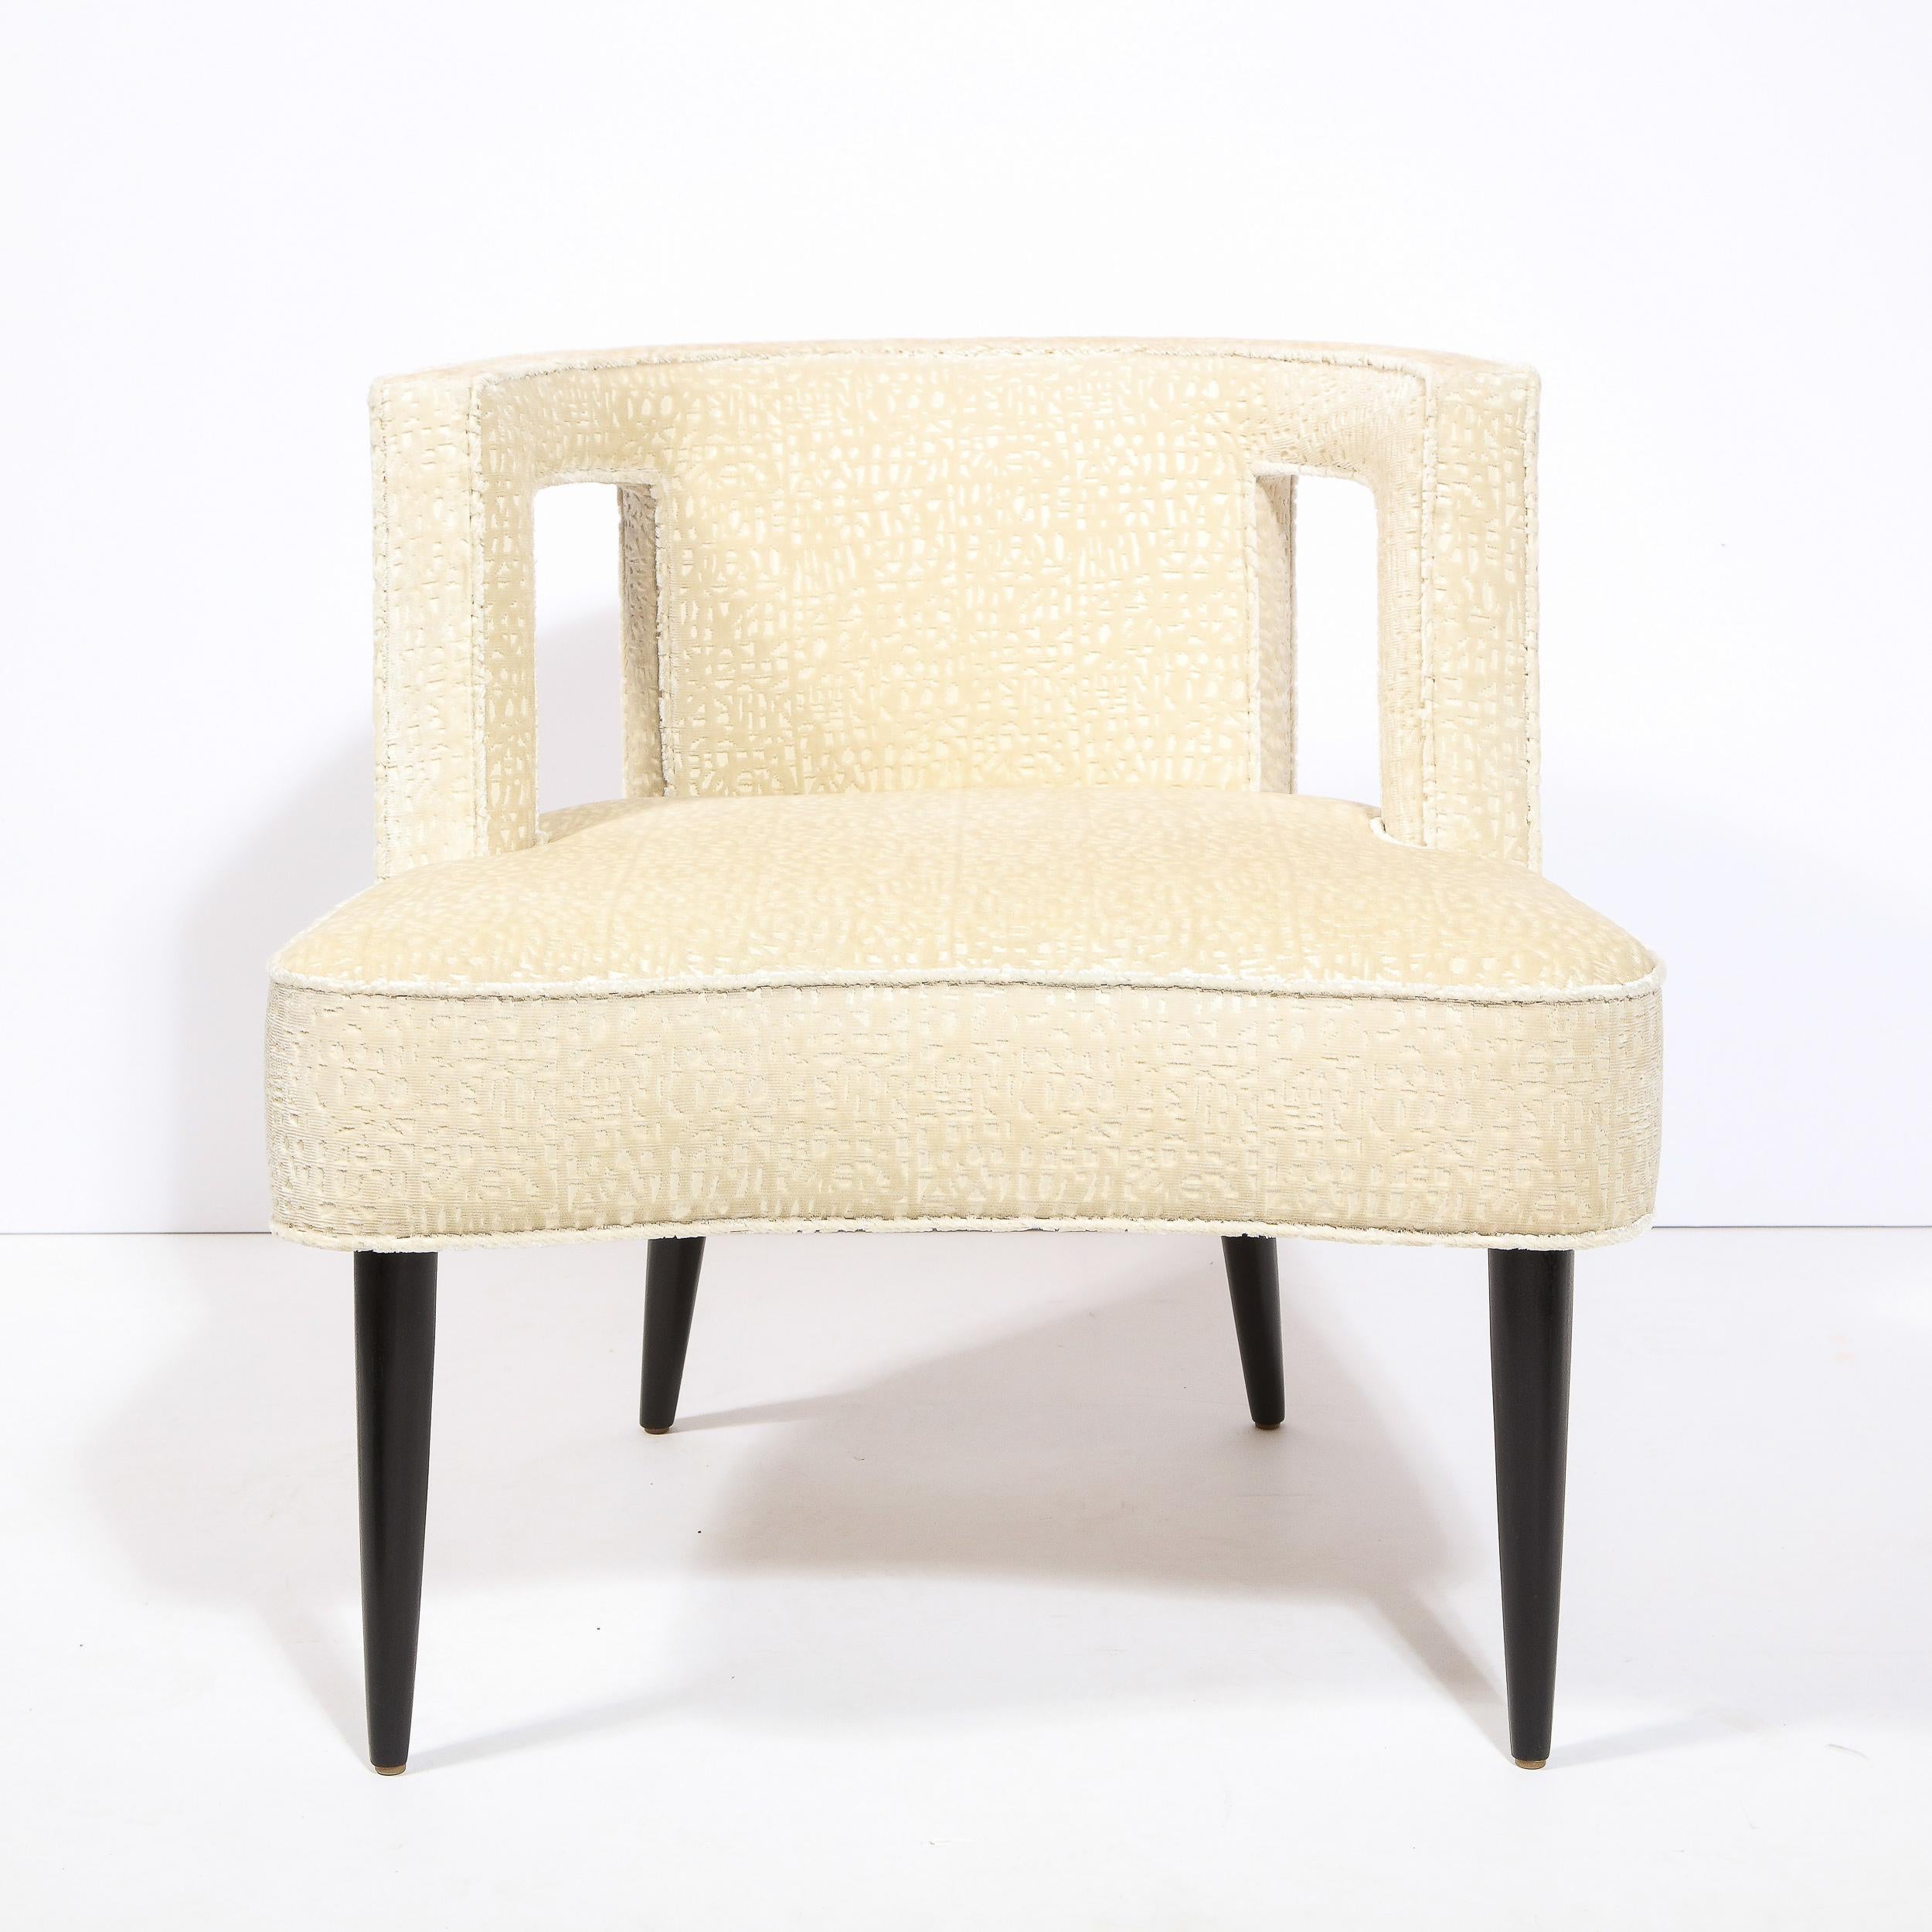 Dieser grafische und skulpturale Sessel wurde um 1950 in den Vereinigten Staaten hergestellt. Er hat eine tonnenförmige Rückenlehne mit zwei rechteckigen Formen, die aus der Rückenlehne herausgeschnitten sind, zylindrische, konische Füße aus